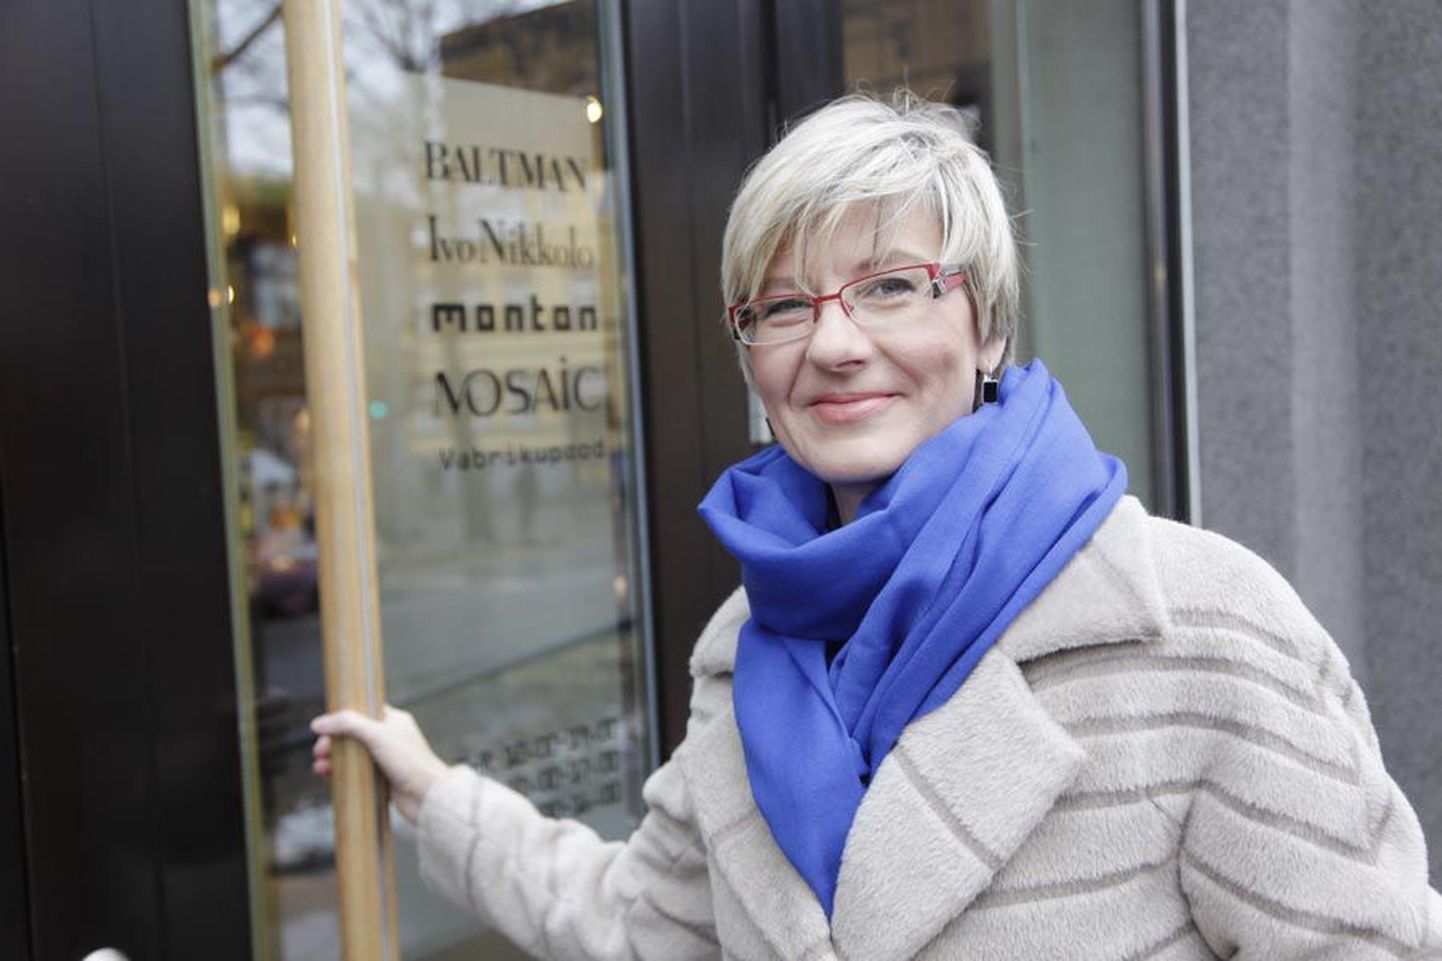 Baltika Grupi juhatuse liige Kati Kusmin lubab Viljandisse Montoni ja Mosaici rõivaid müüvat kauplust mai alguseks.